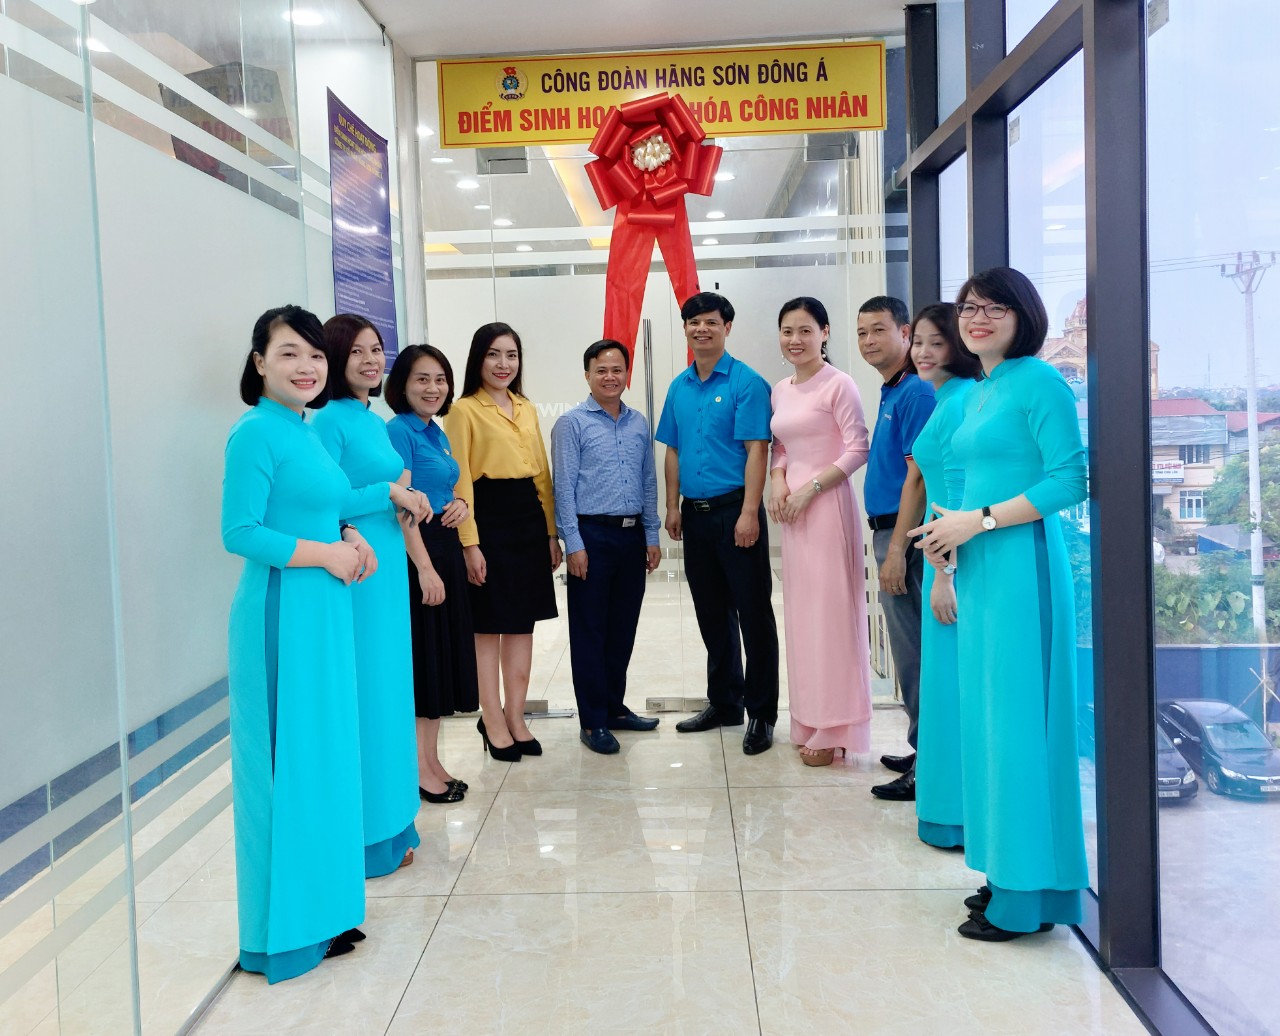 Hà Nội ra mắt 2 điểm sinh hoạt văn hoá công nhân